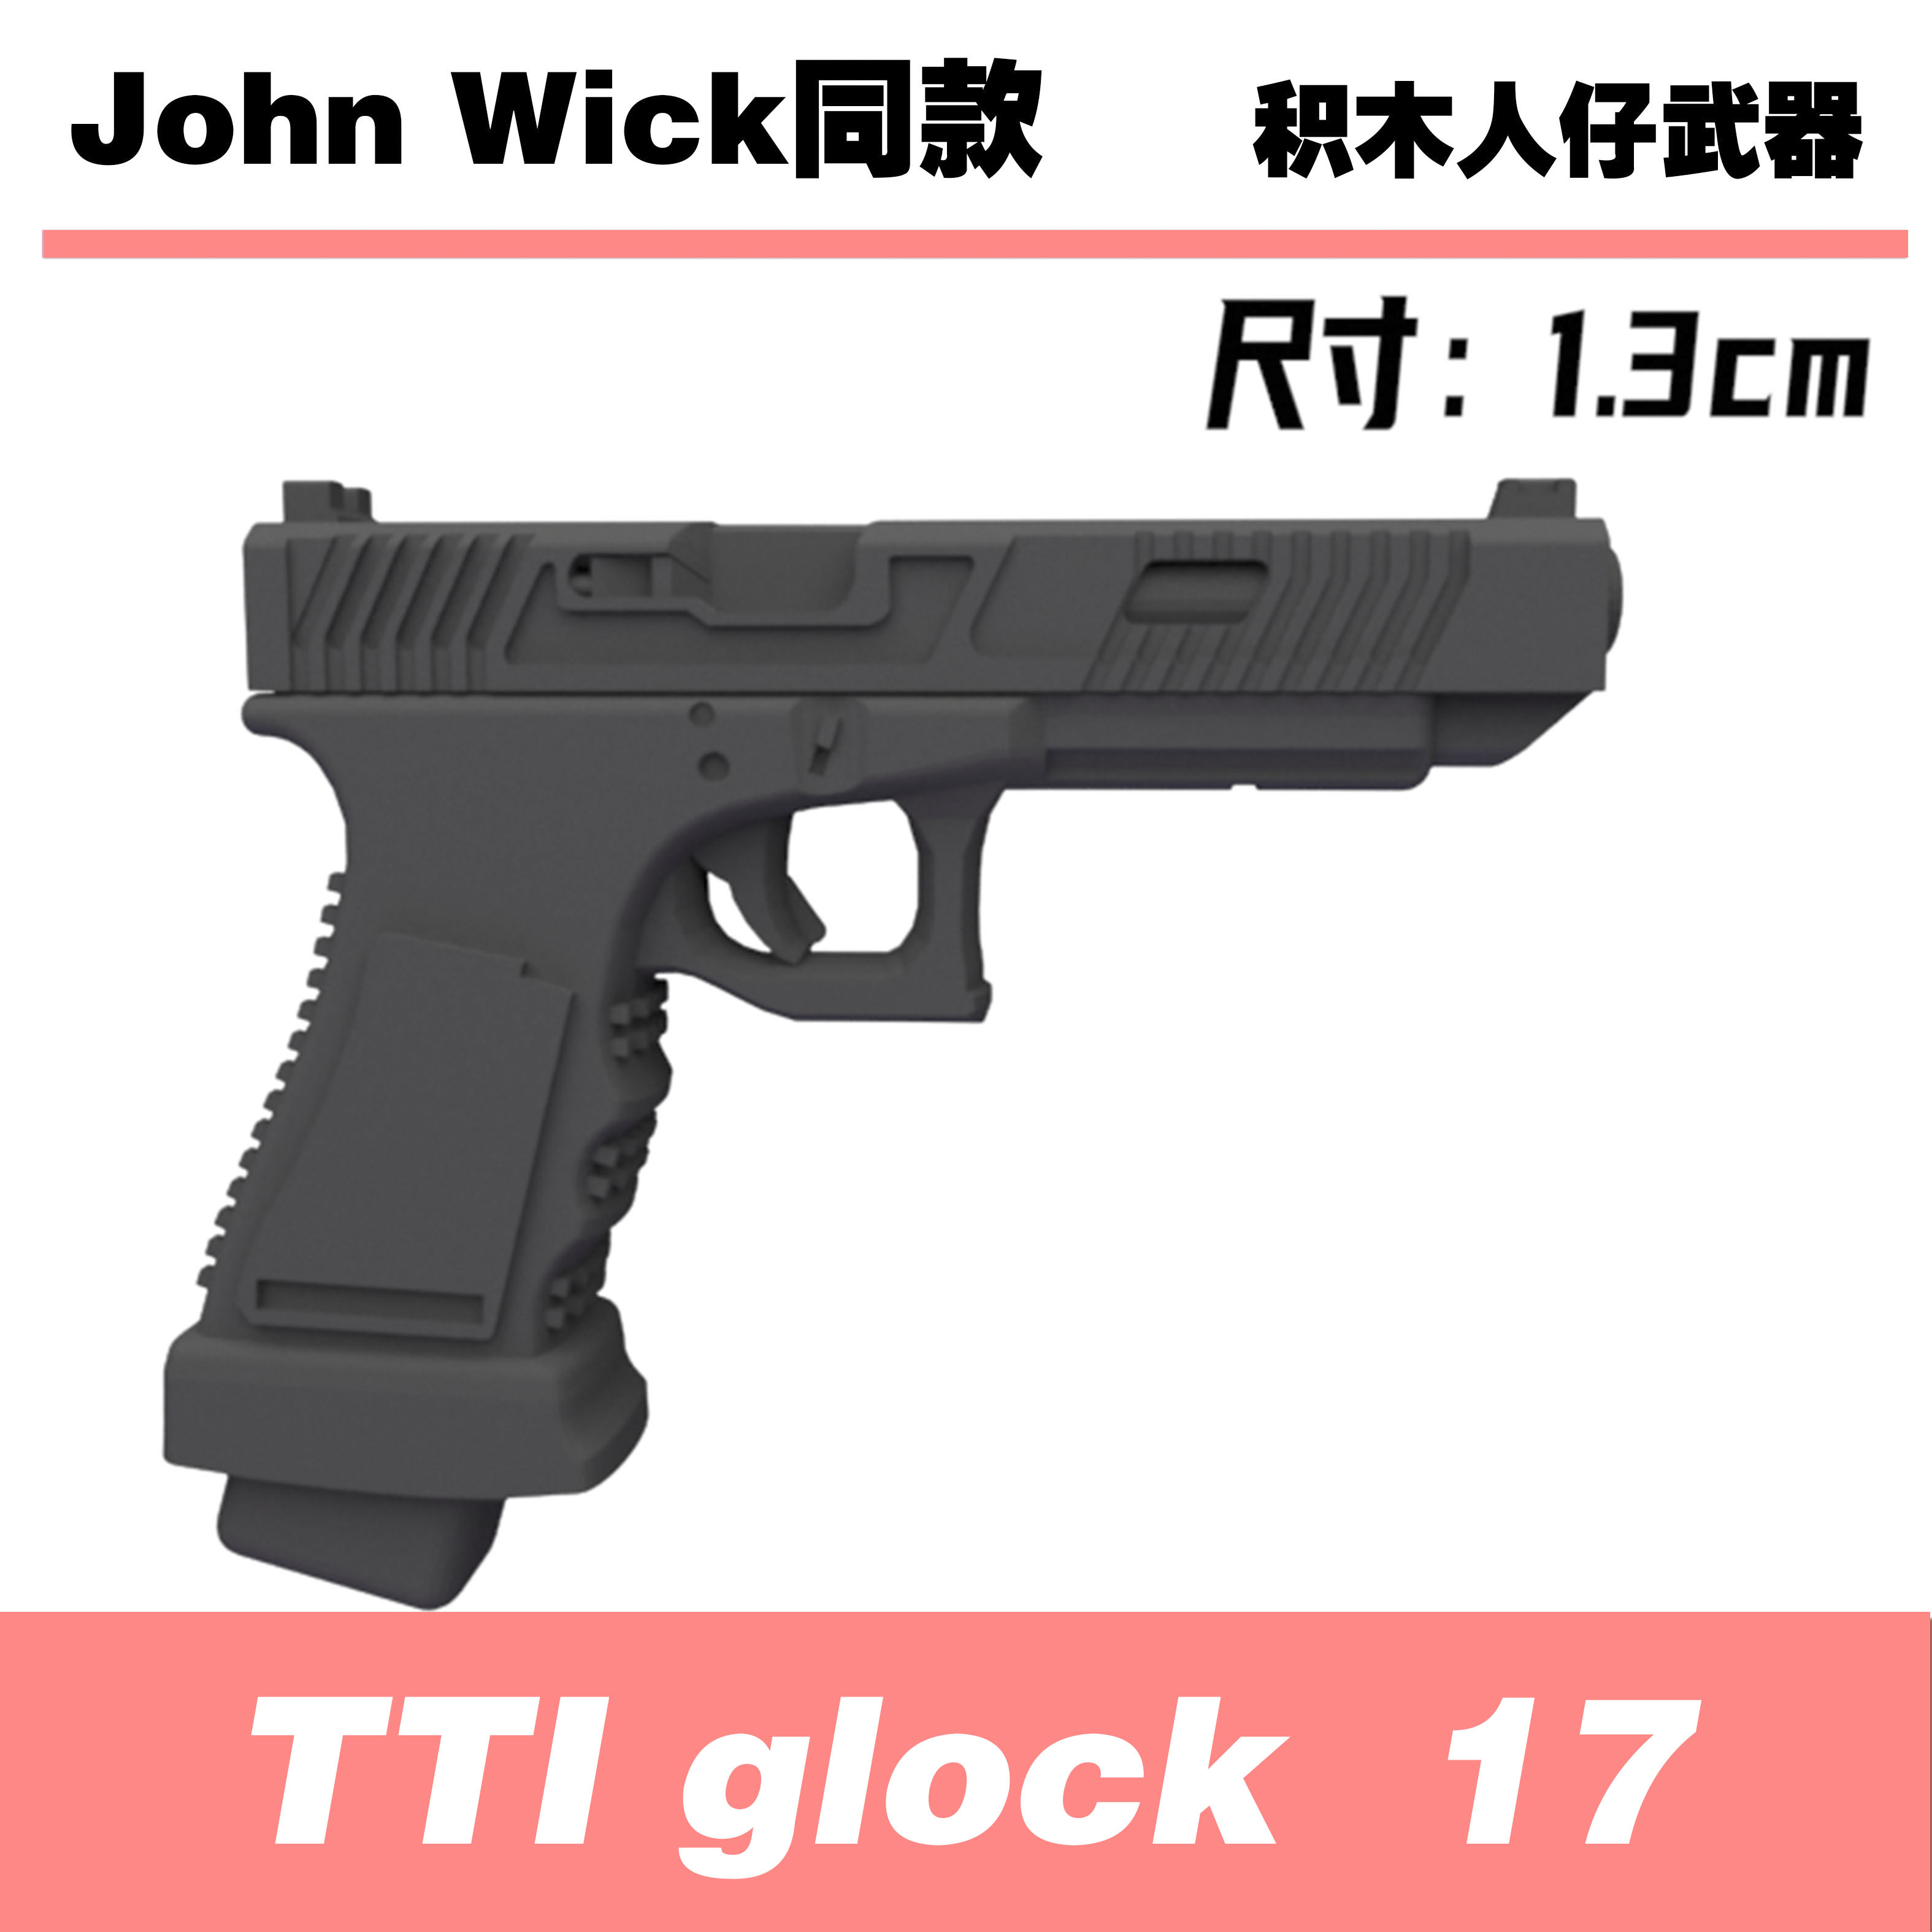 中国积木第三方军事人仔武器疾速追杀jhonwick基努李维斯GLOCK 17